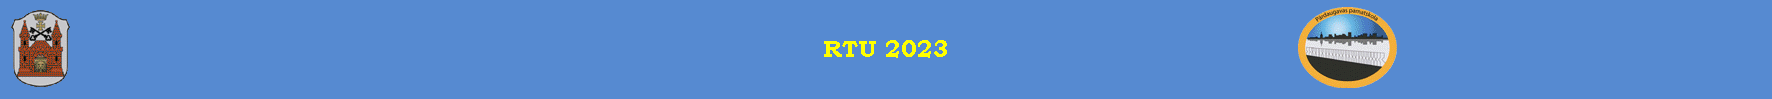 RTU 2023